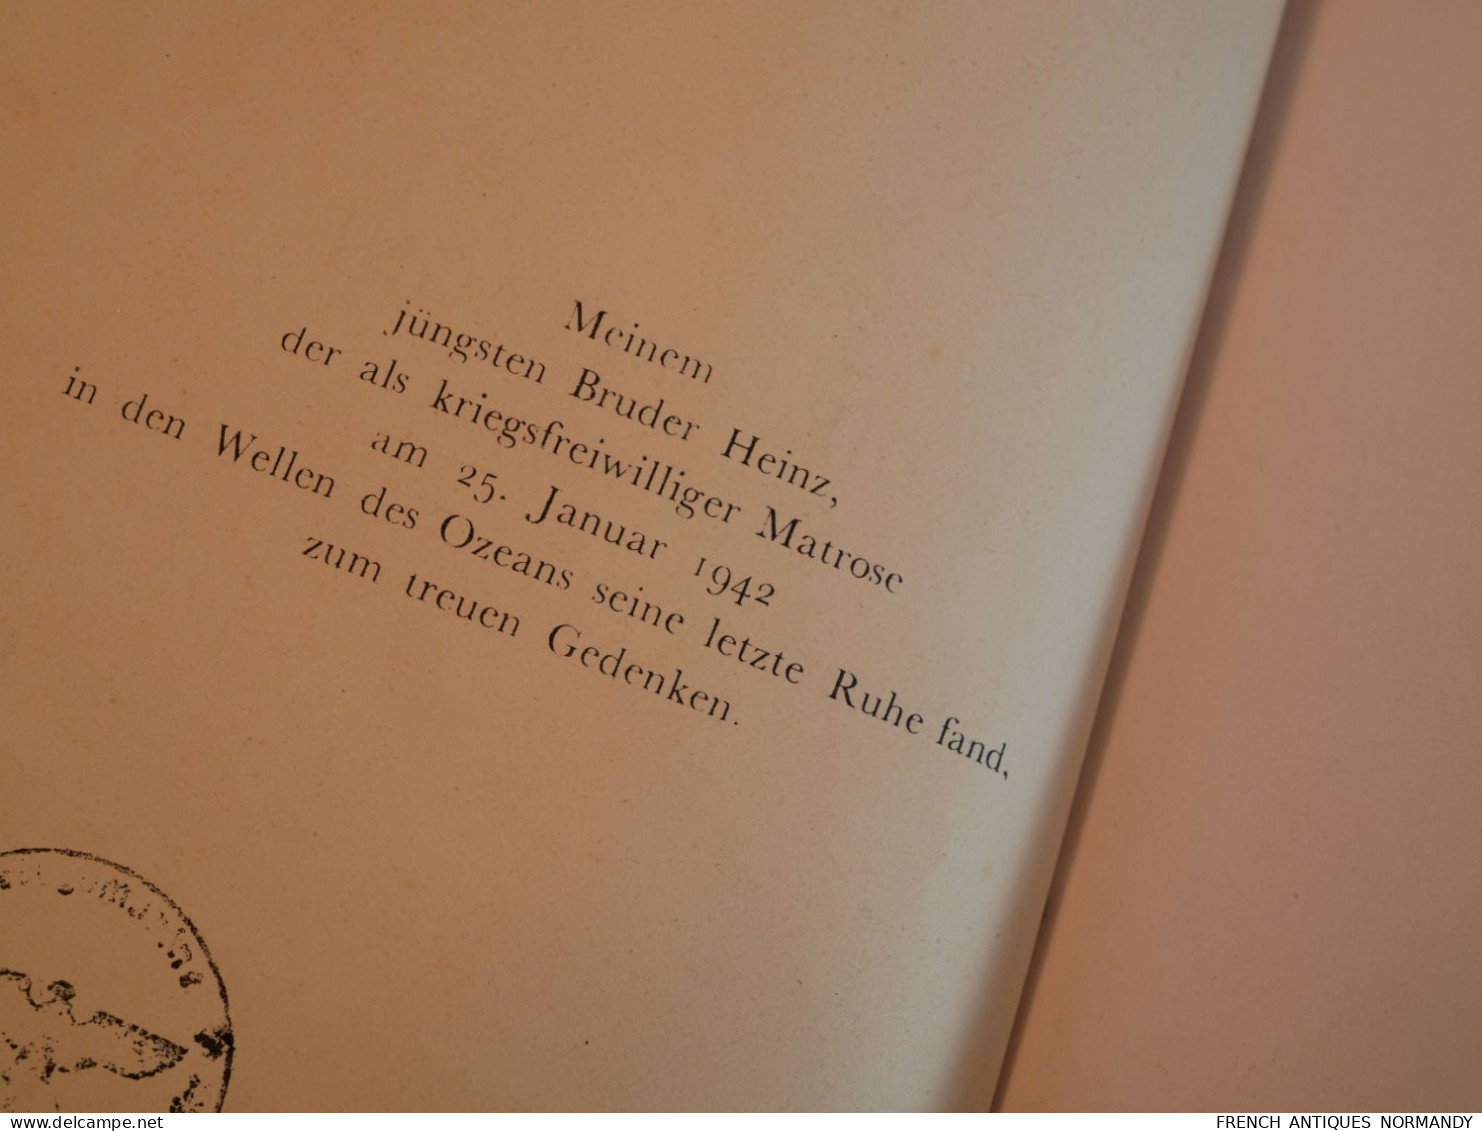 ARMÉE ALLEMANDE - livre DIE BRETAGNE allemand de 1943 avec cachet Marine  livre non politique de géographie et de voyage